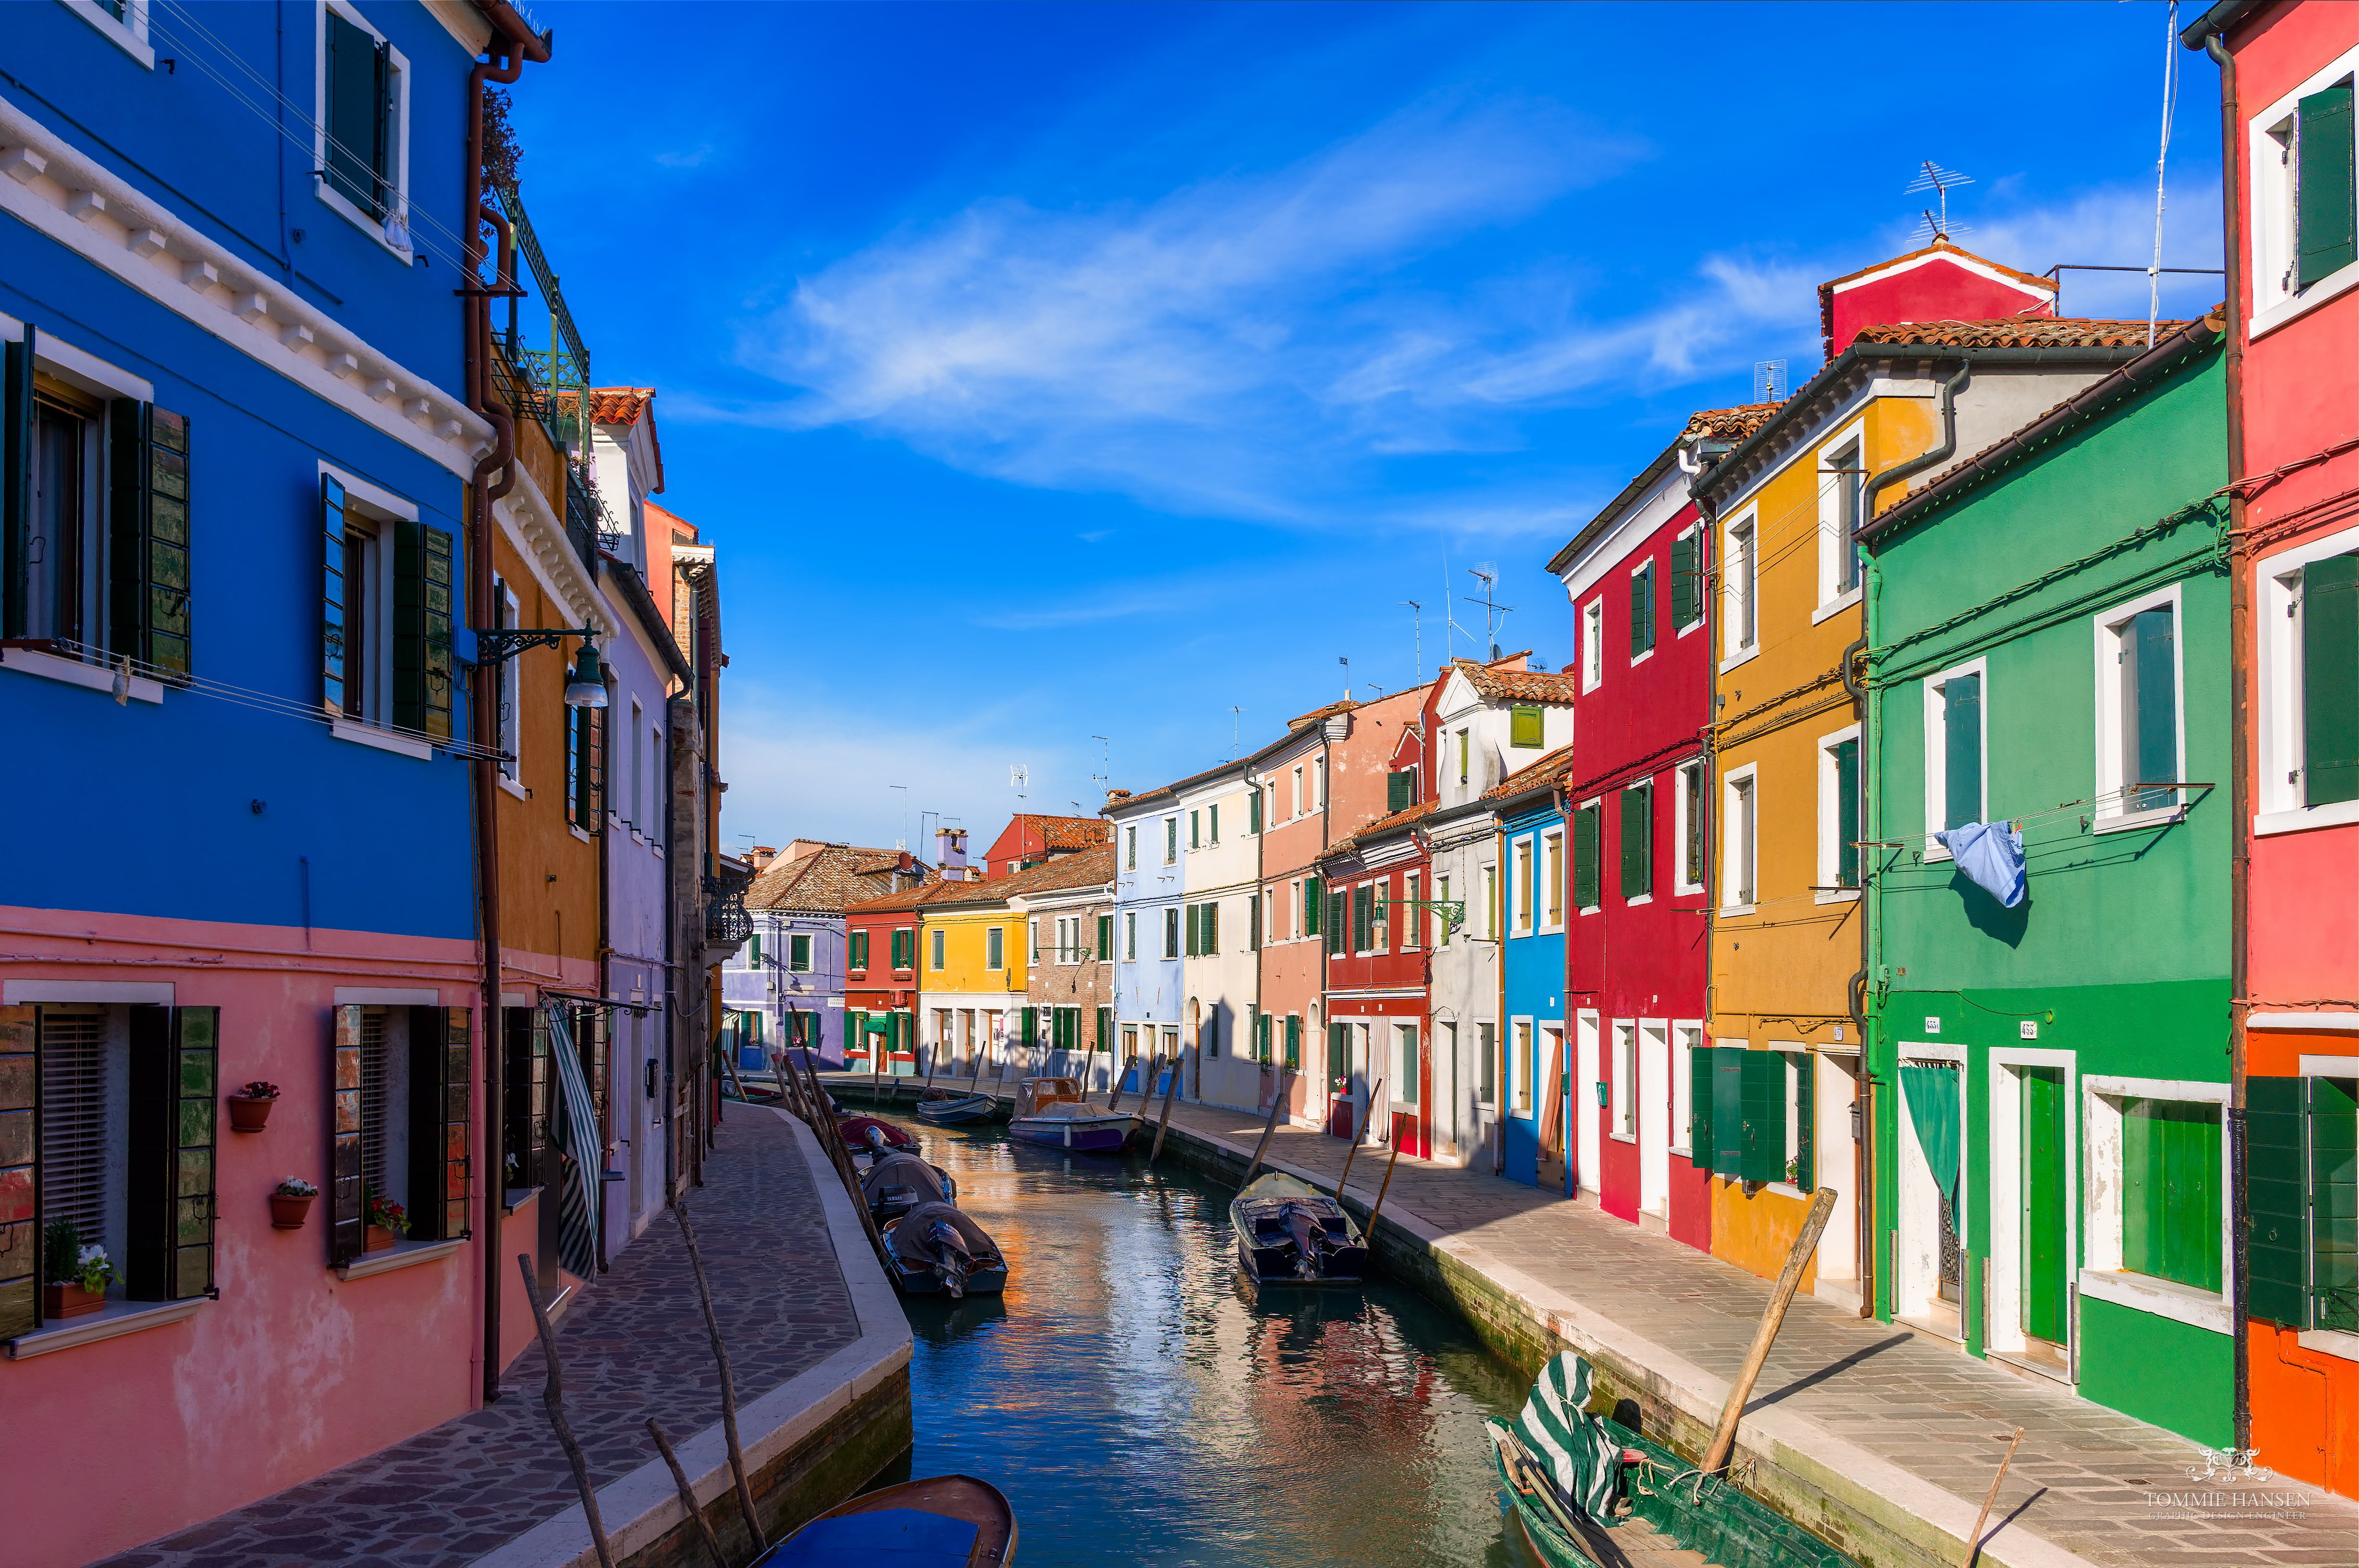 بهترین تصویر از شهر ونیز در ایتالیا همراه ساختمان های رنگارنگ و کیوت 